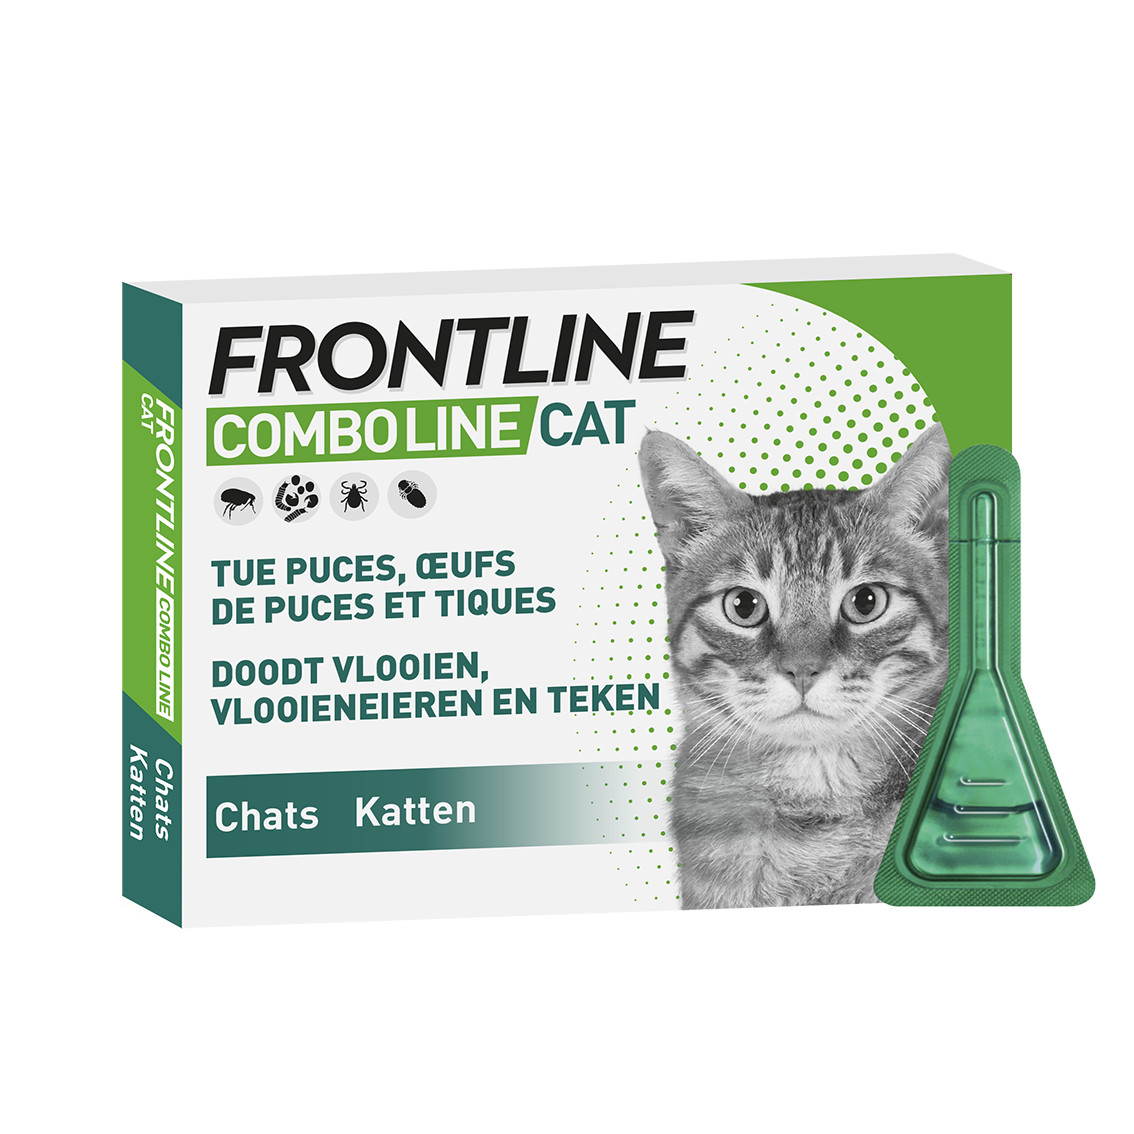 Frontline Comboline Cat Spot On Katze Gunstig